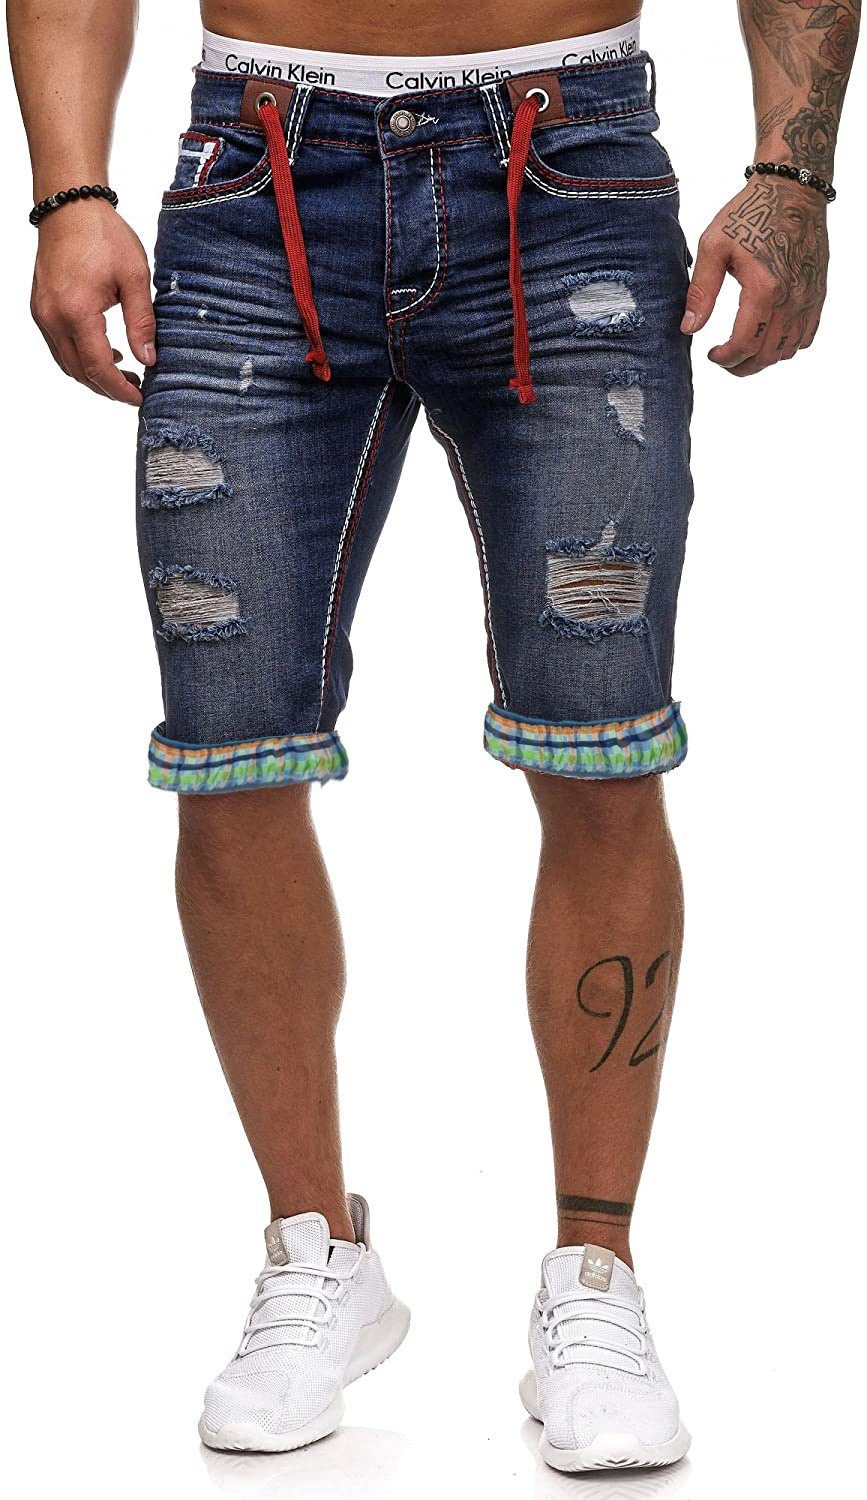 L.gonline Sweatshorts Herren Jeans Shorts, Kurze Hose, Bermuda, Dicke Naht, L-2020 (Shorts, kurze Jeans, kurze Hose, 1-tlg) mit dicker farbiger Naht D-Rot